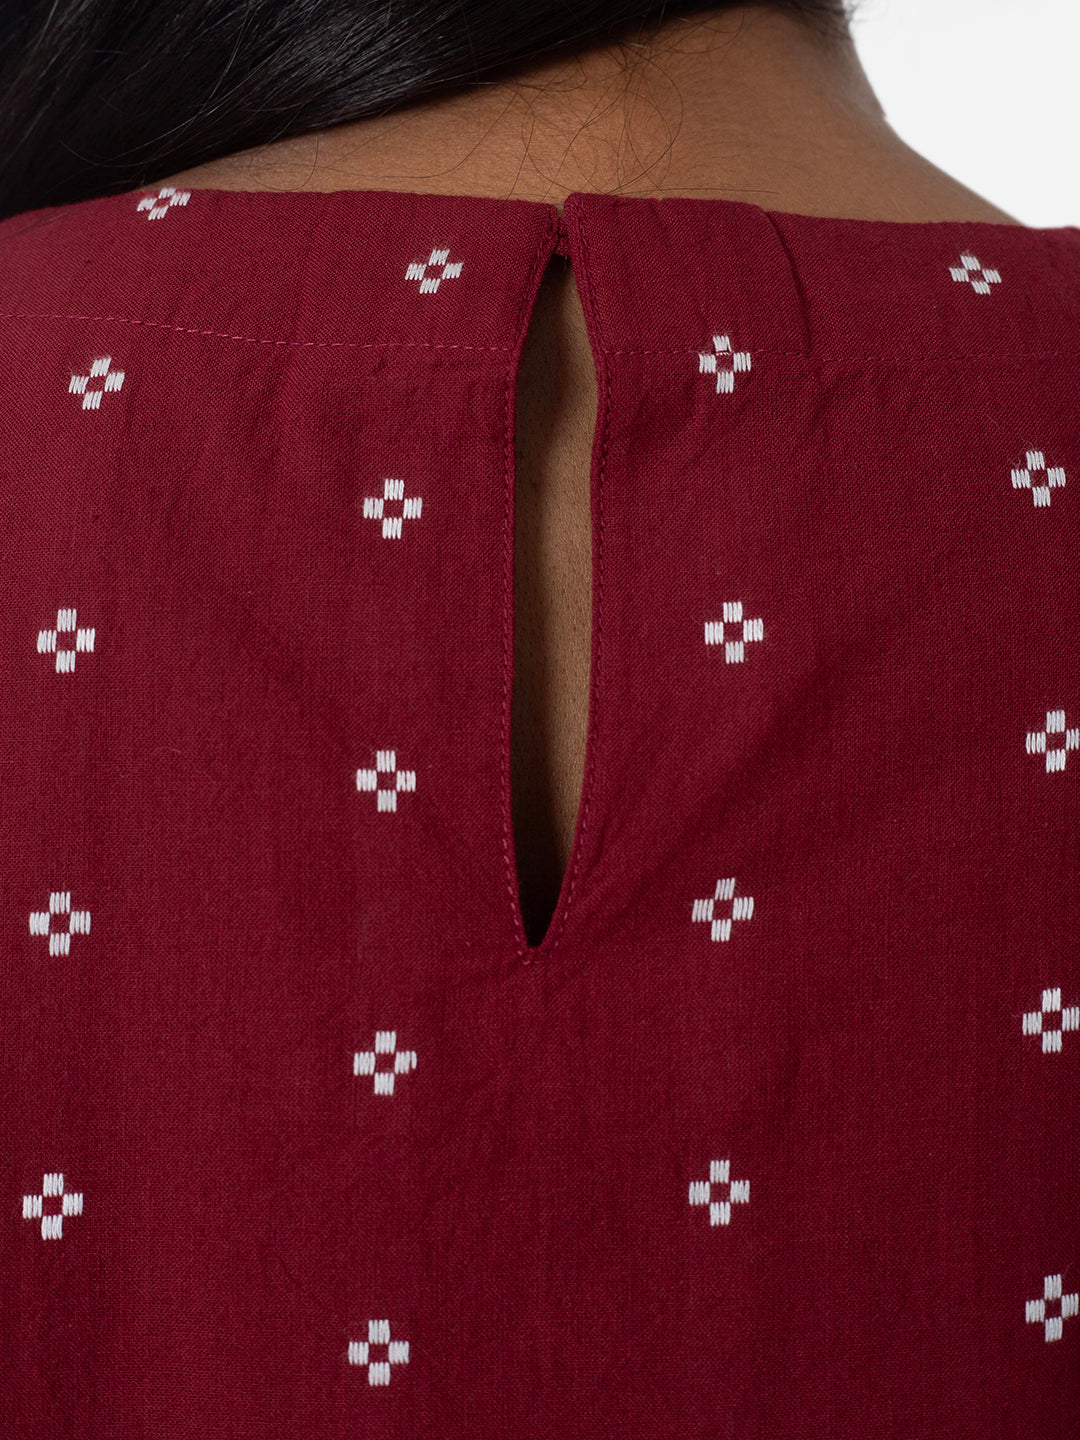 Crimson Glow Pyjama Set